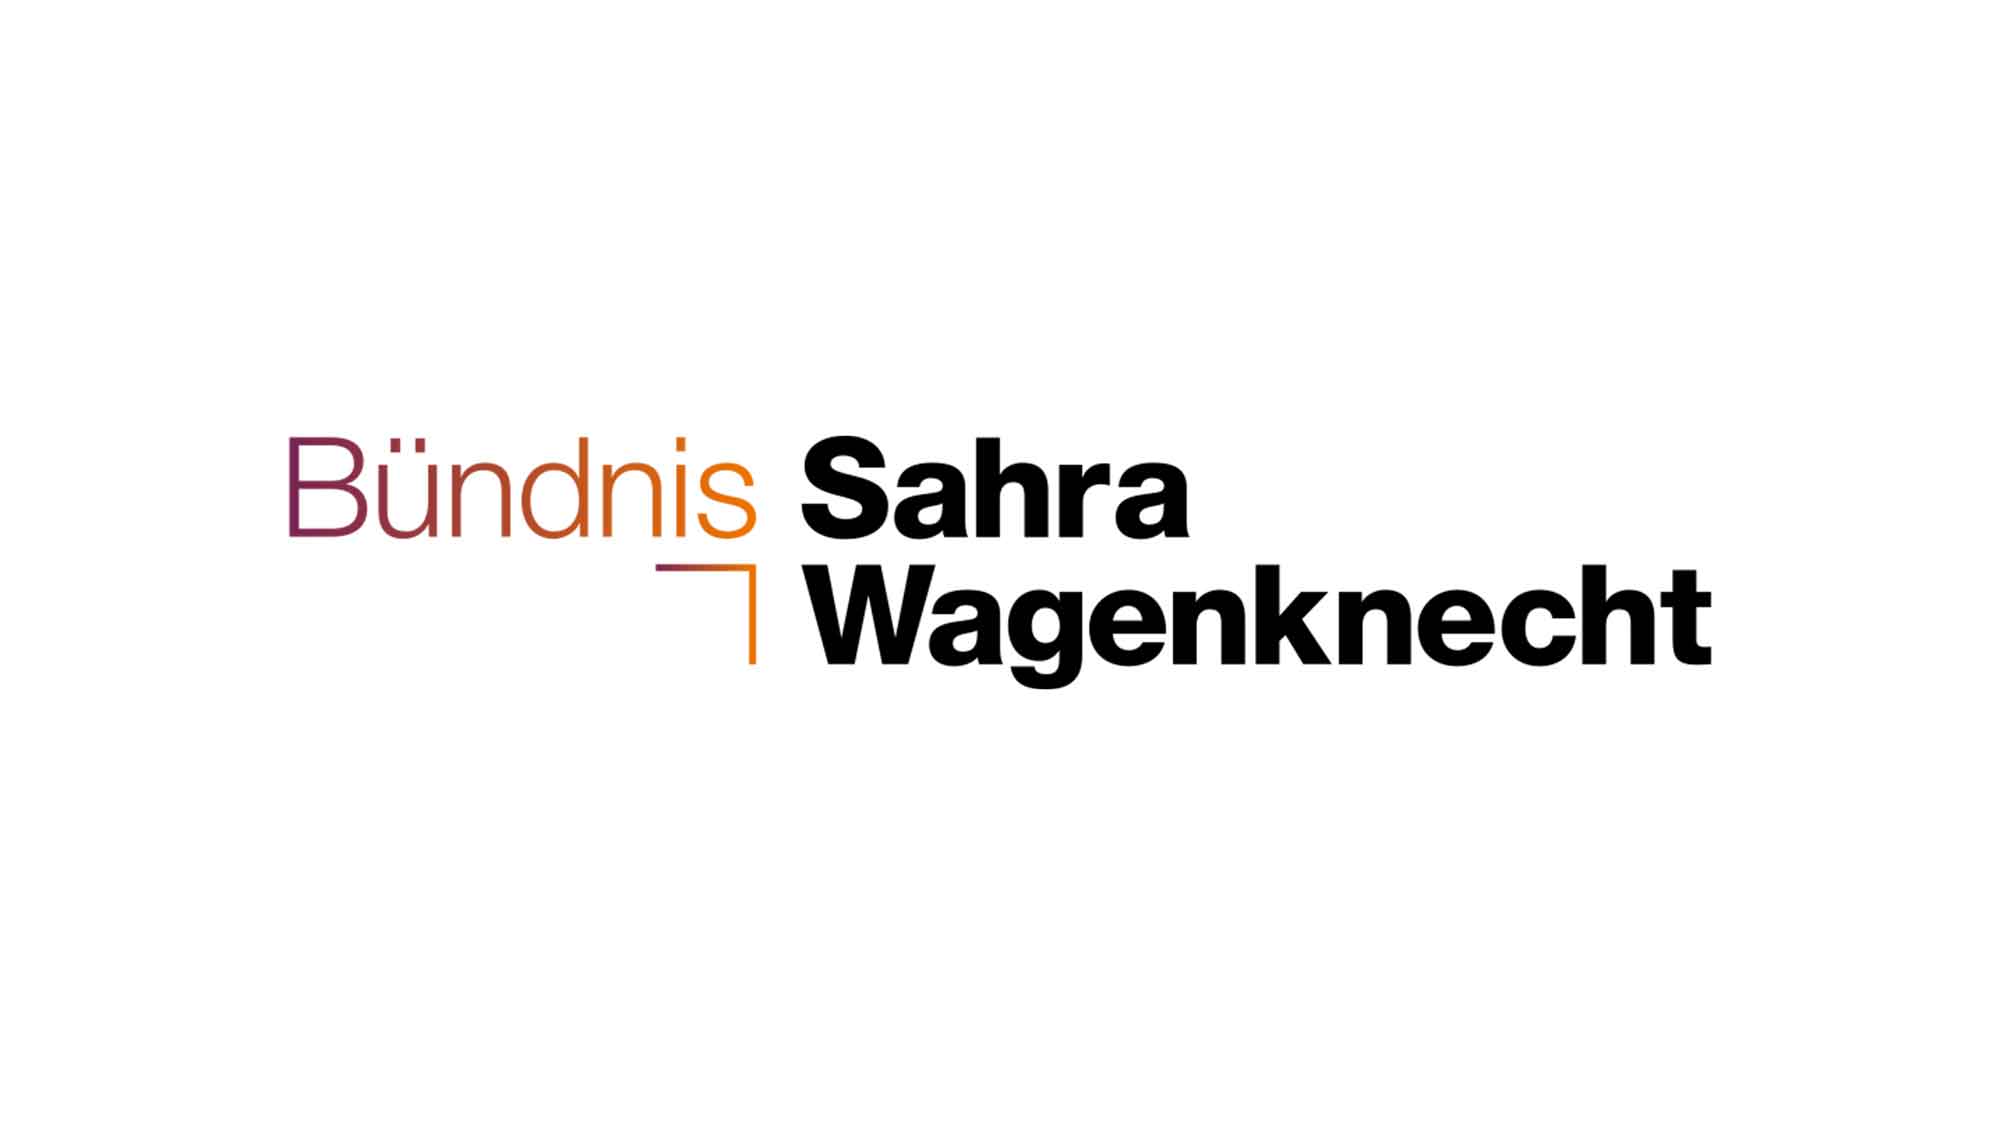 Das Bündnis Sahra Wagenknecht schwankt zwischen Hoffnungsschimmer und Trugbild